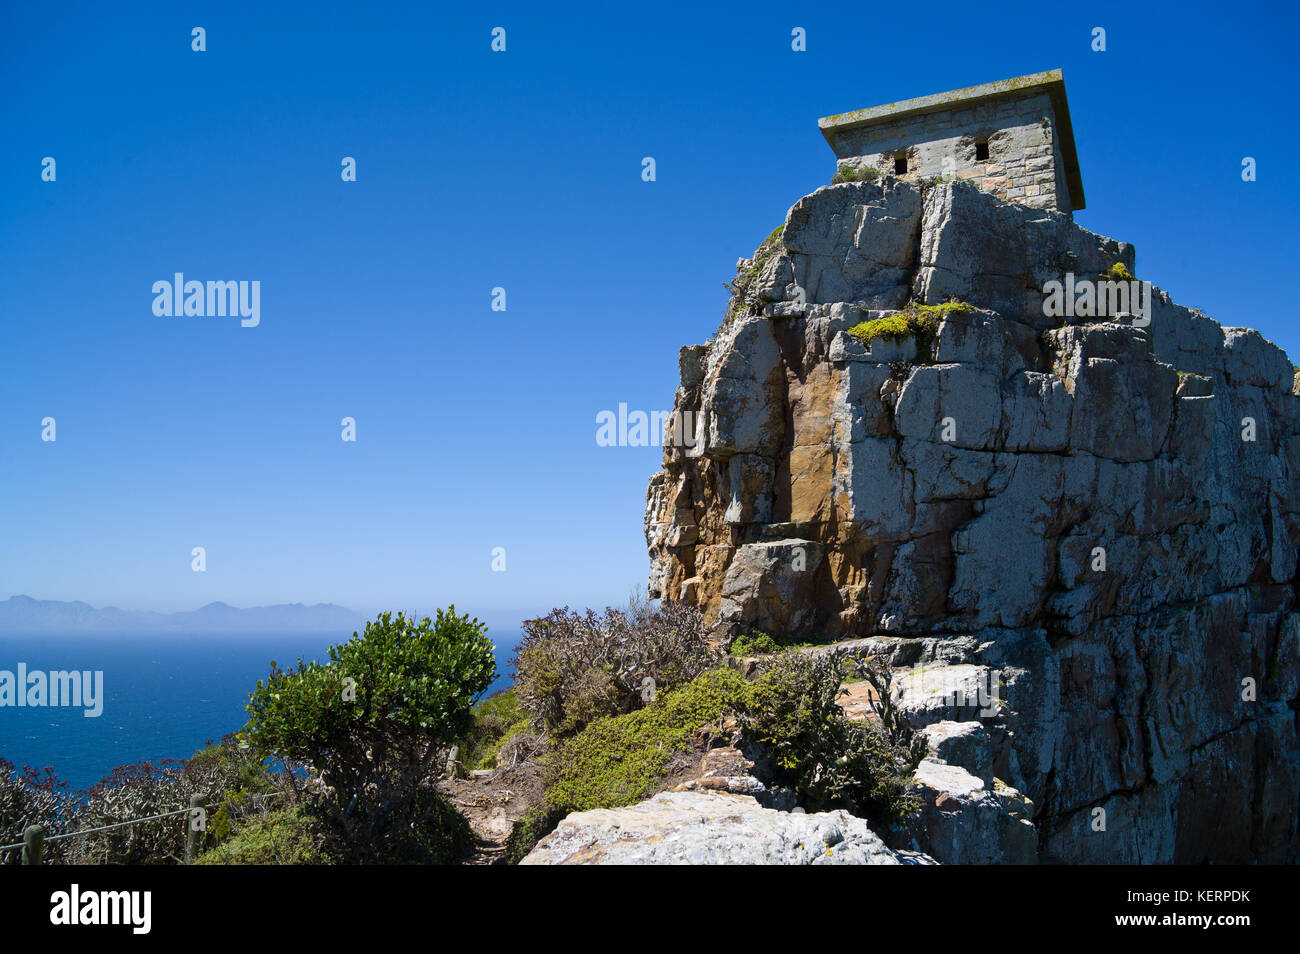 Cape point fait partie de table mountain national park et offre une vue imprenable et l'occasion de randonnée ou d'explorer rencontre de deux océans. Banque D'Images